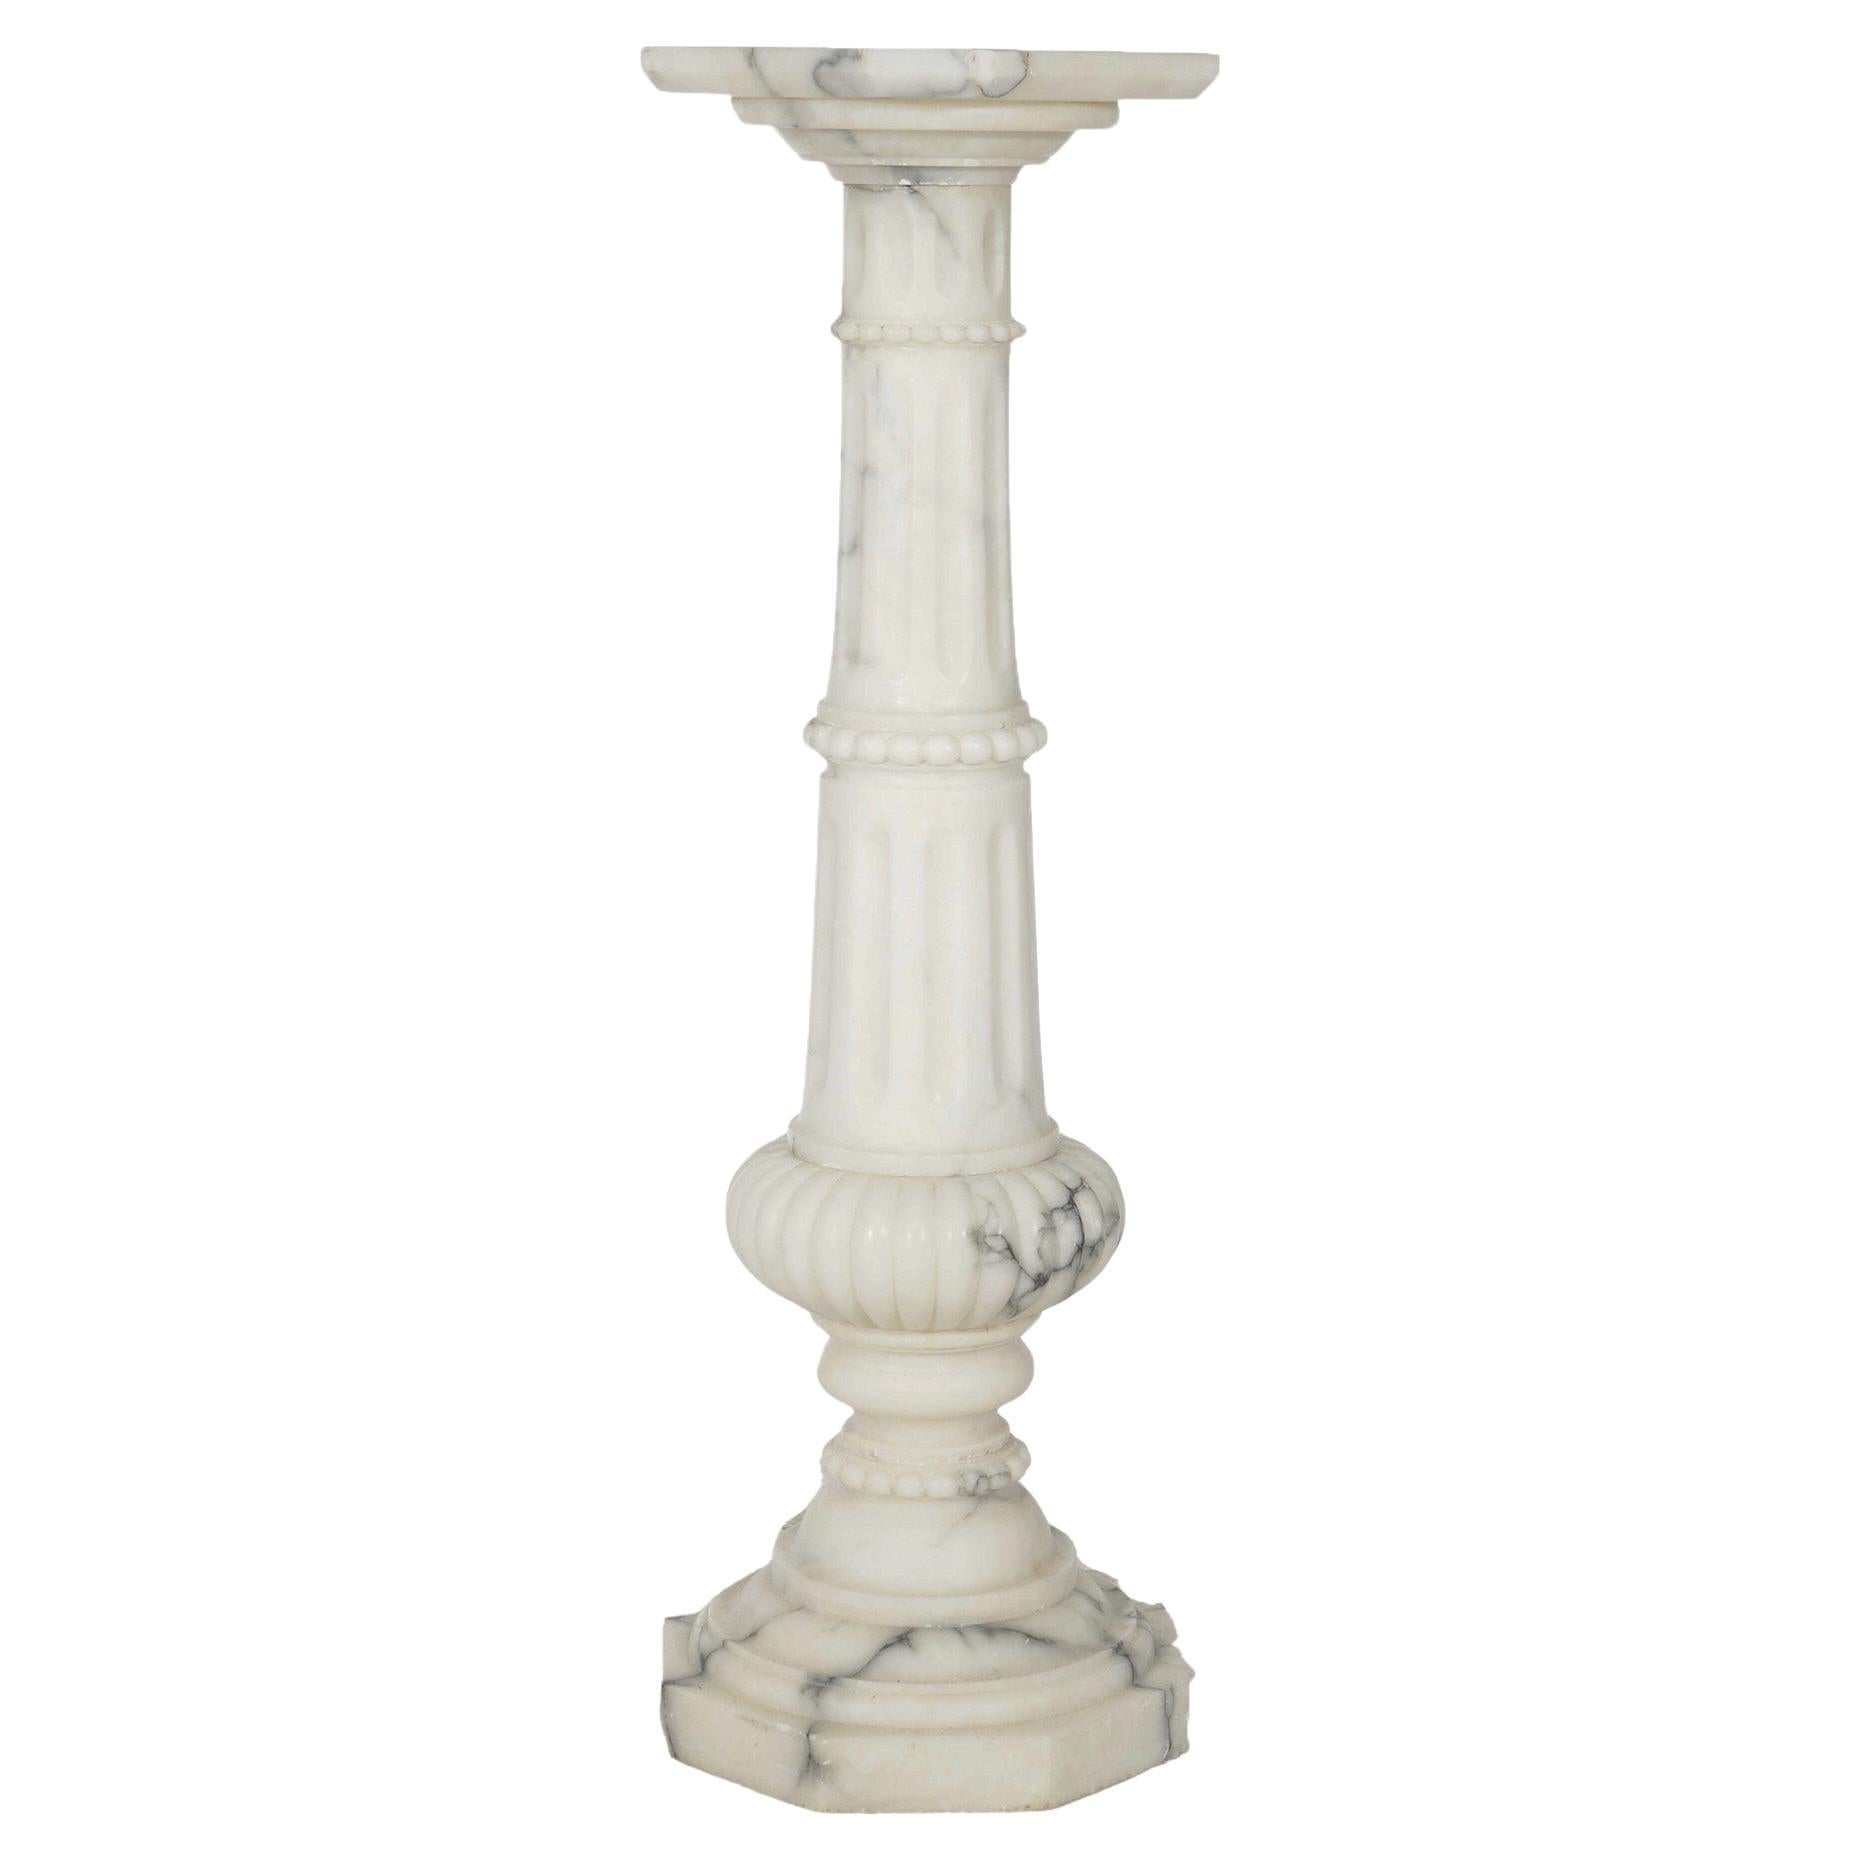 Antique sculpture classique en marbre The Pedestal, circa 1890